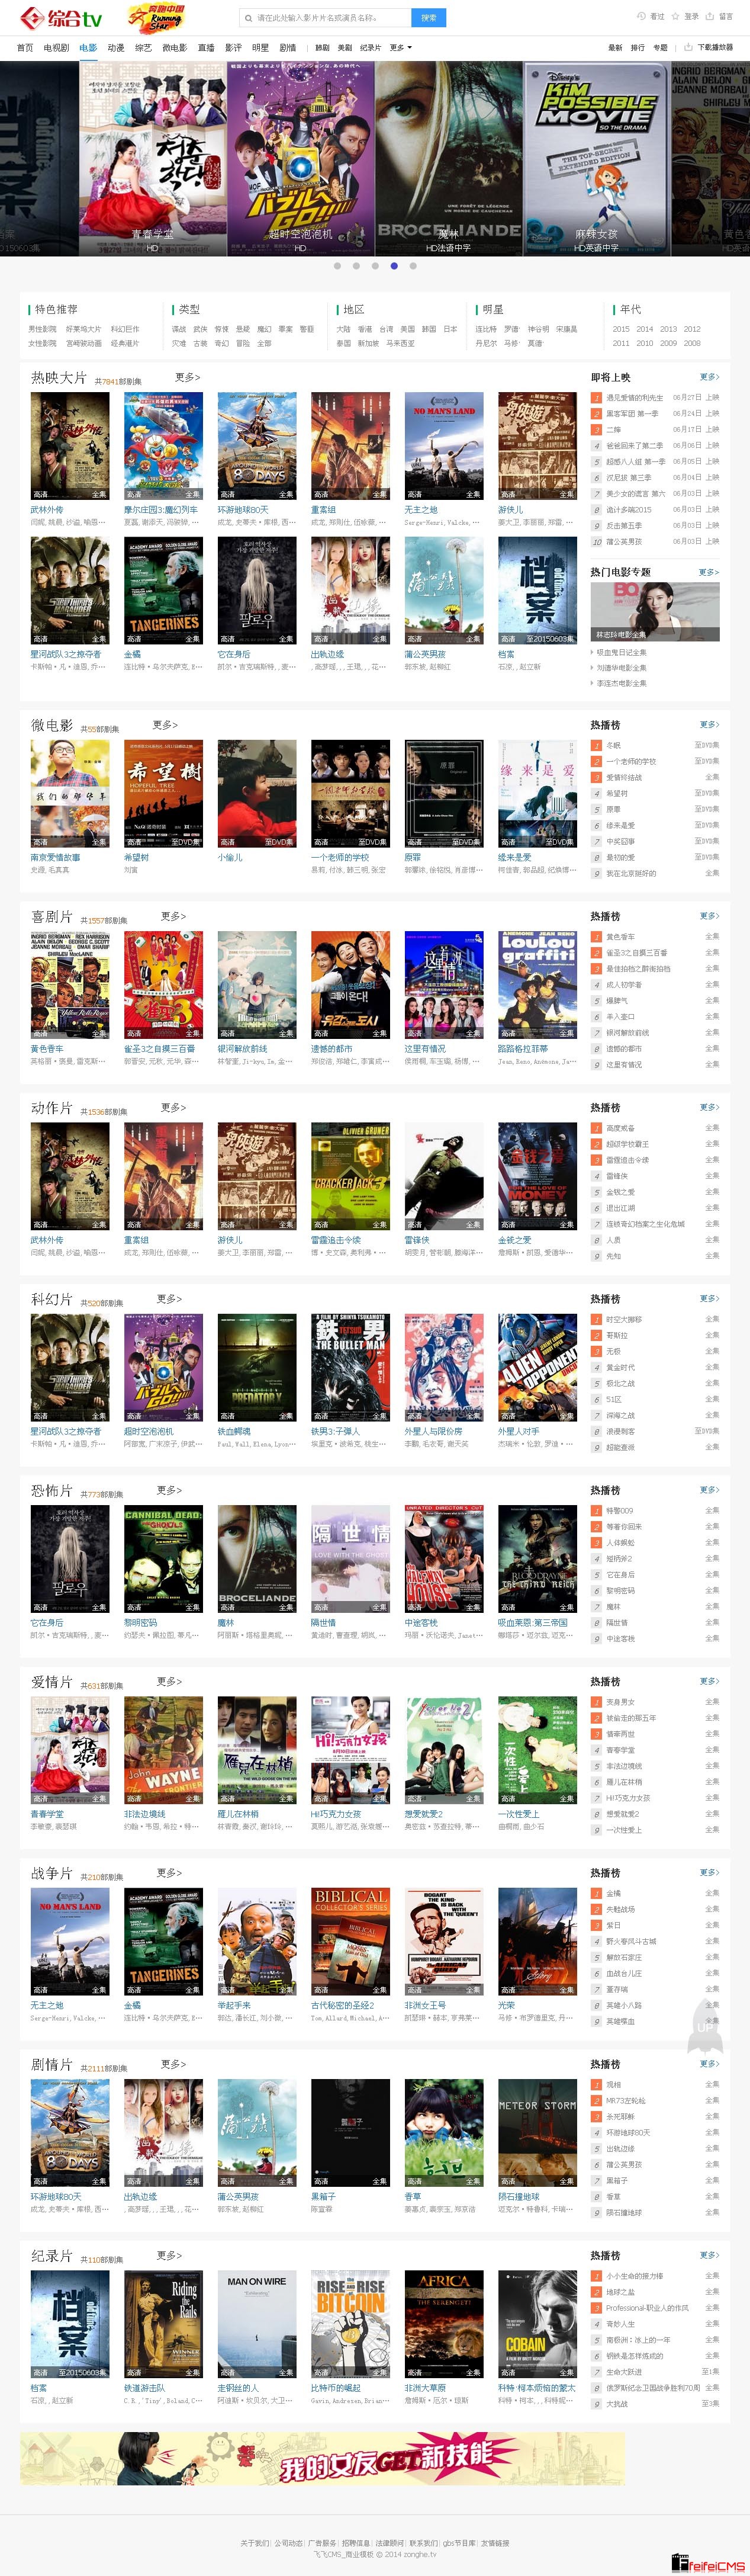 电影频道-2014最新电影、好看的电影、电影排行榜在线观看、高清电影下载 - 飞飞CMS_商业模板.jpg